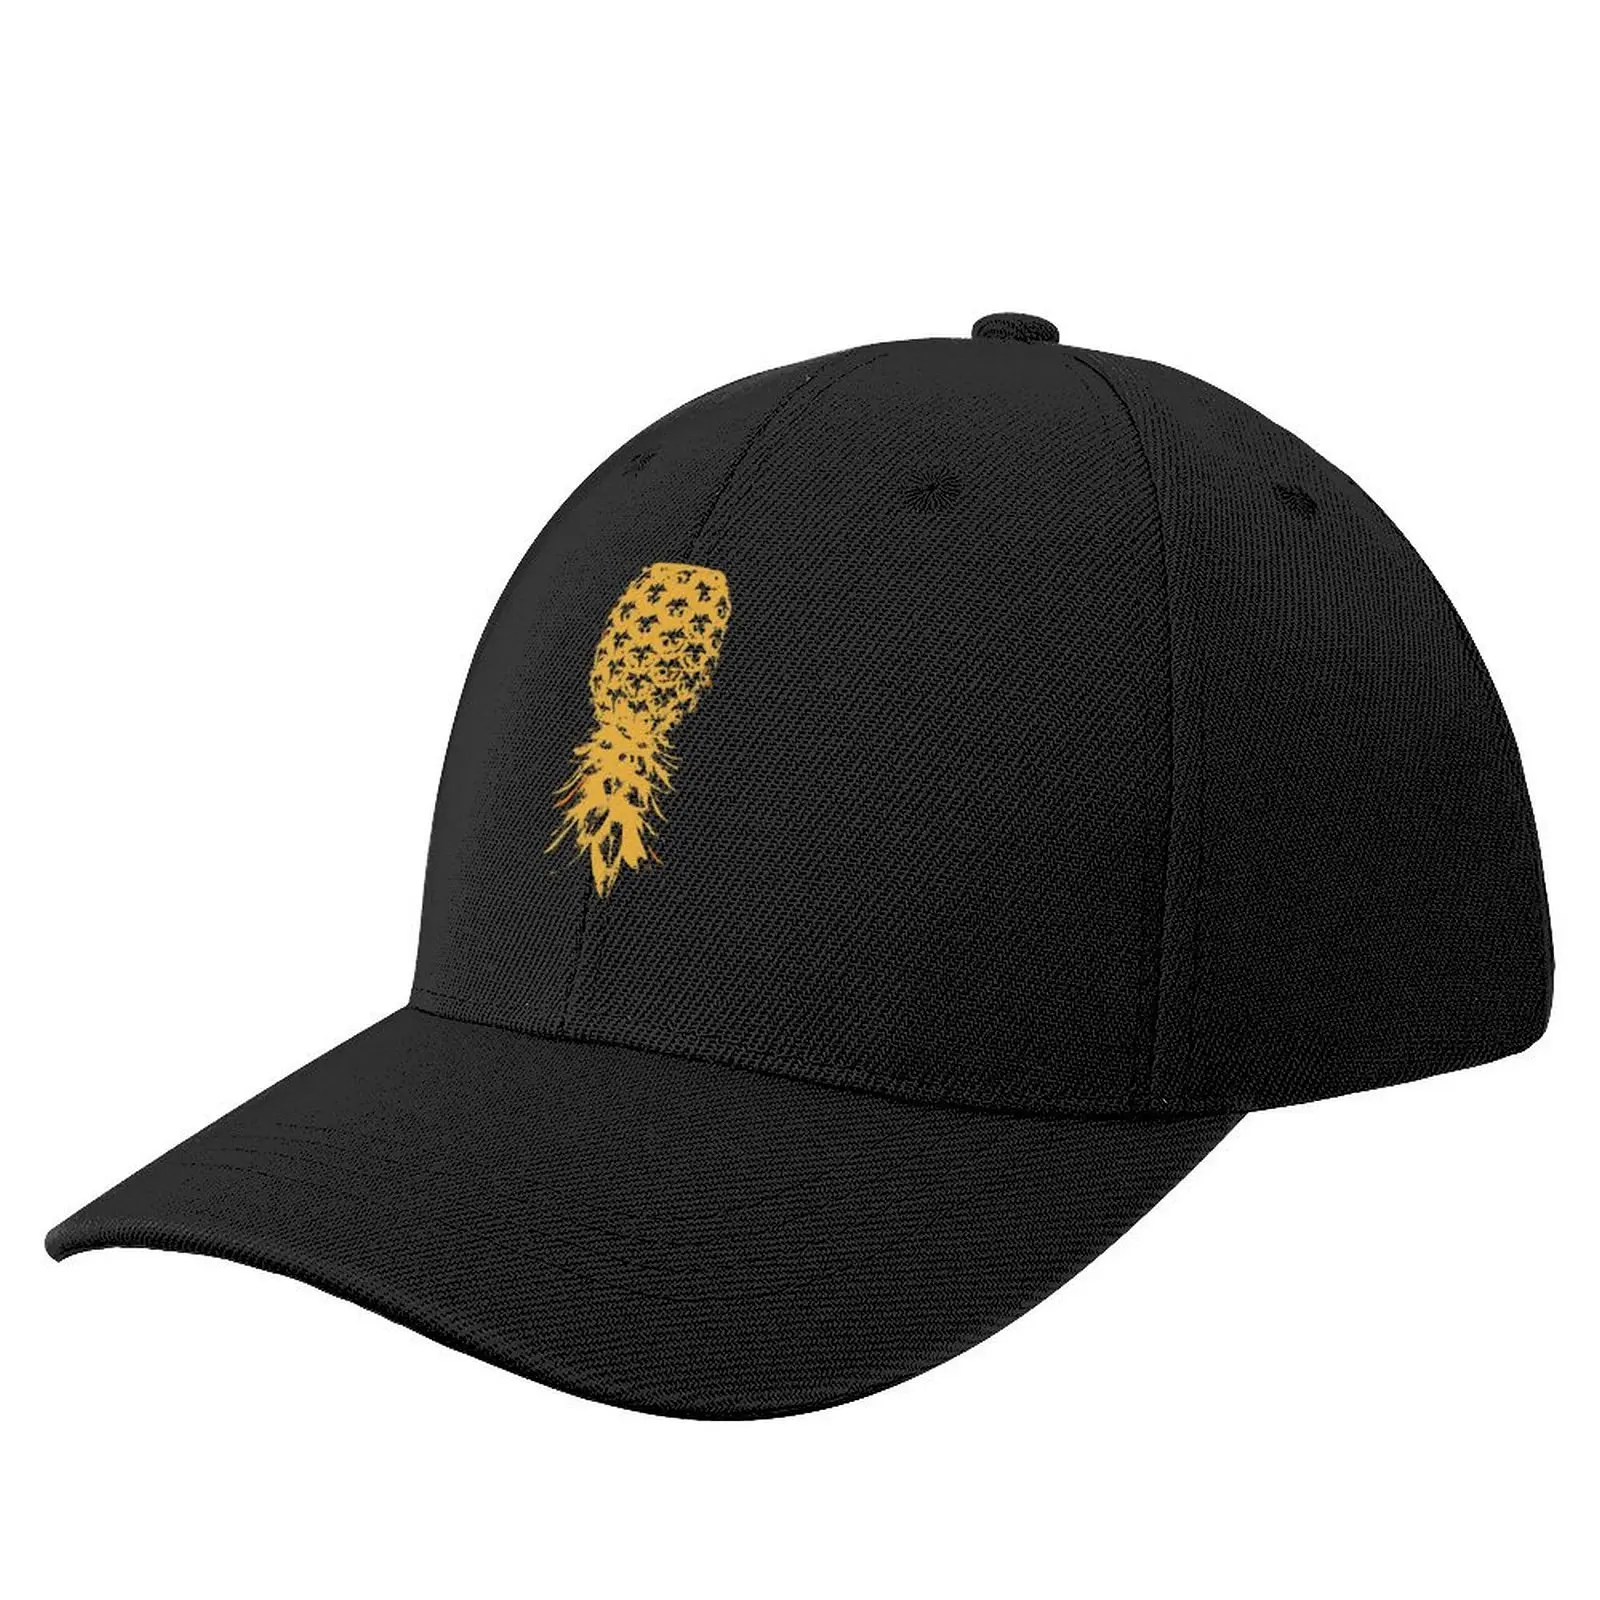 

Swinger Lifestyle Upside Down Pineapple Baseball Cap Snap Back Hat Beach Uv Protection Solar Hat black For Man Women's